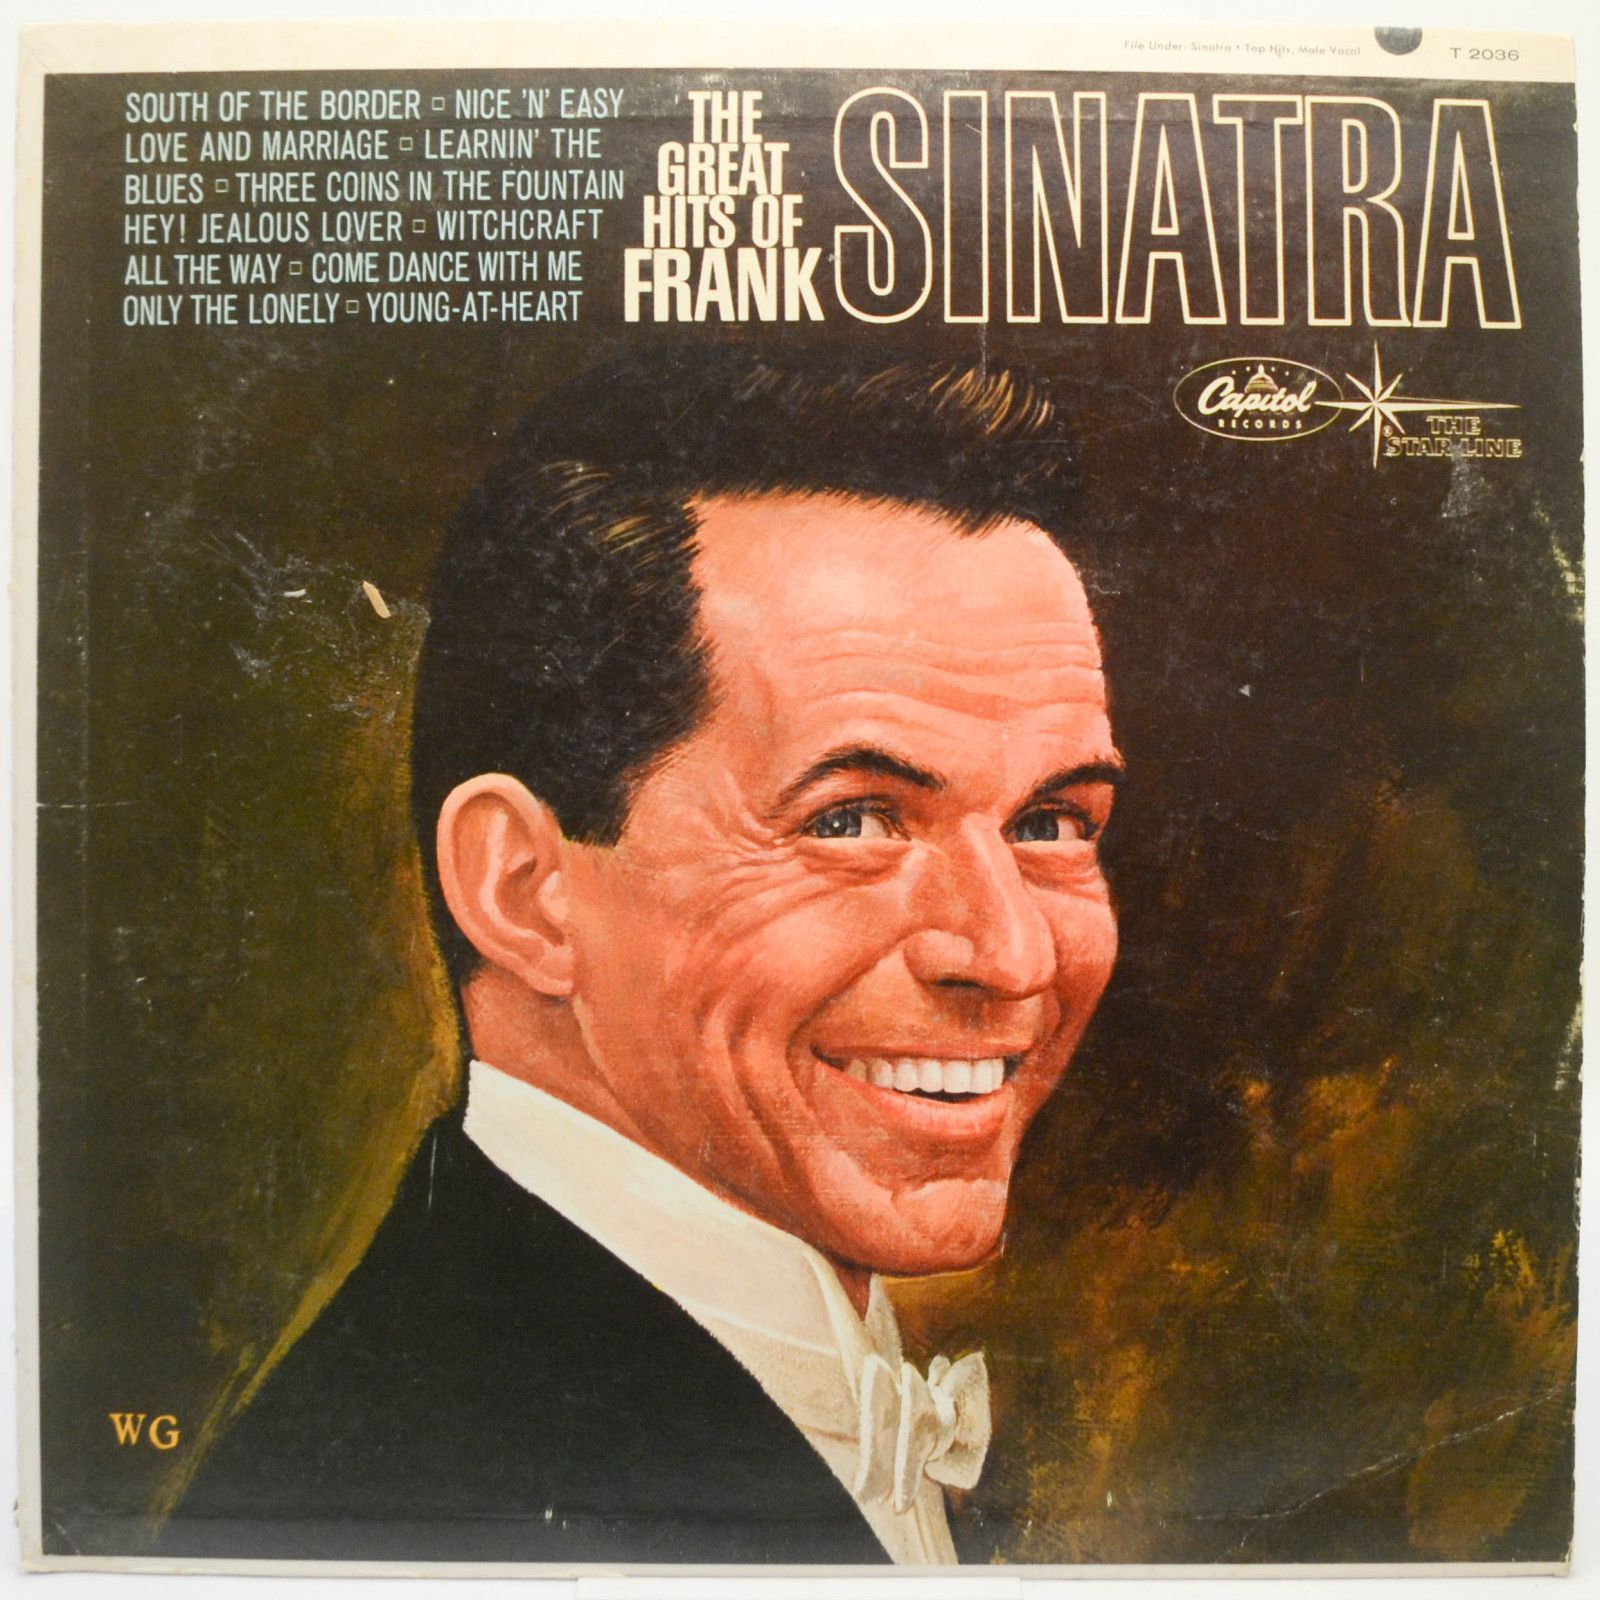 Frank Sinatra — The Great Hits Of Frank Sinatra (USA), 1964